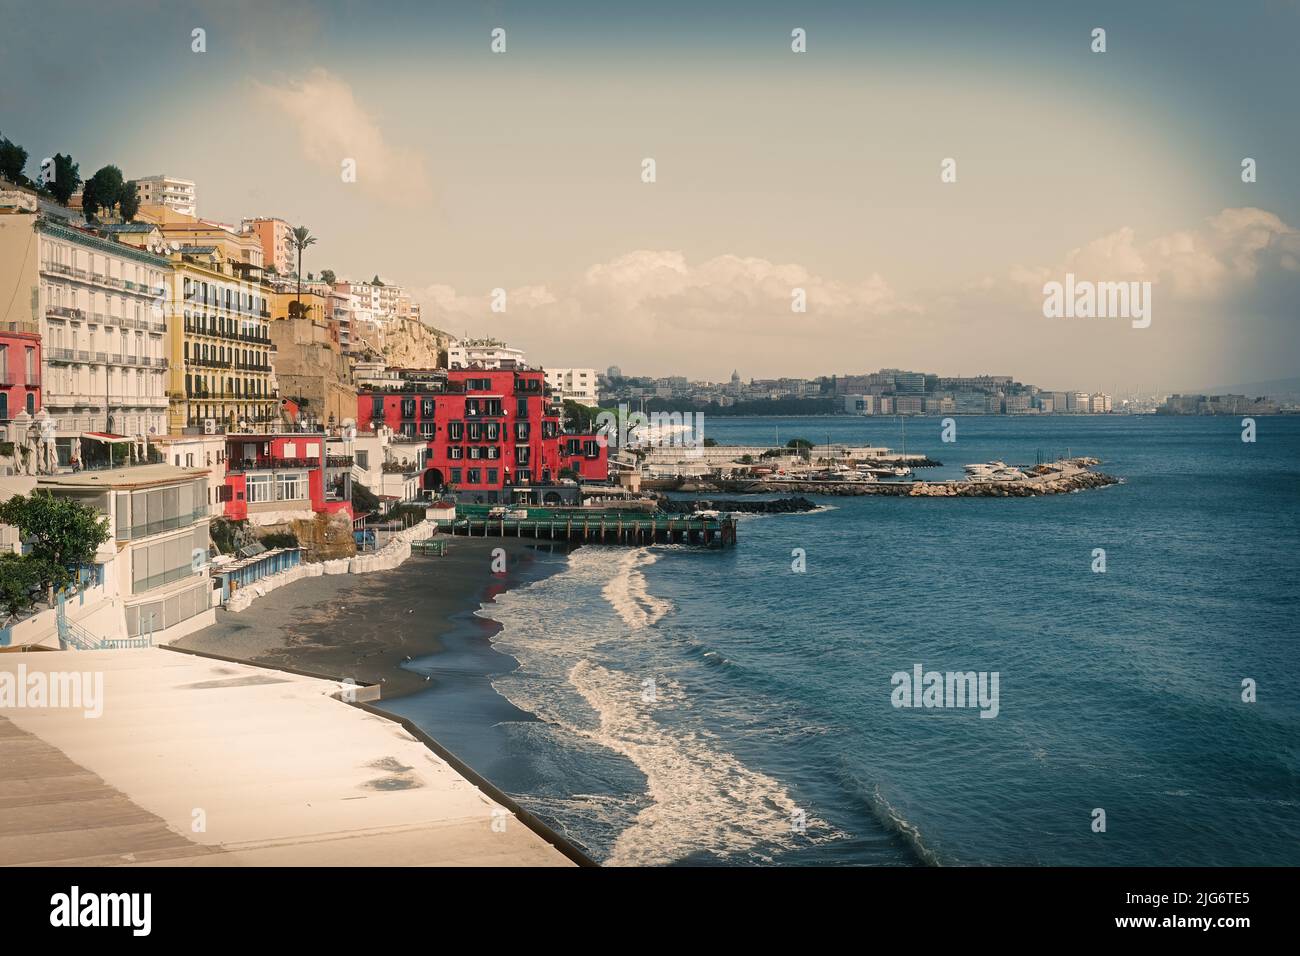 Paesaggio mozzafiato sulle rive del Mediterraneo, Mergellina lungomare nel golfo di Napoli. Foto Stock